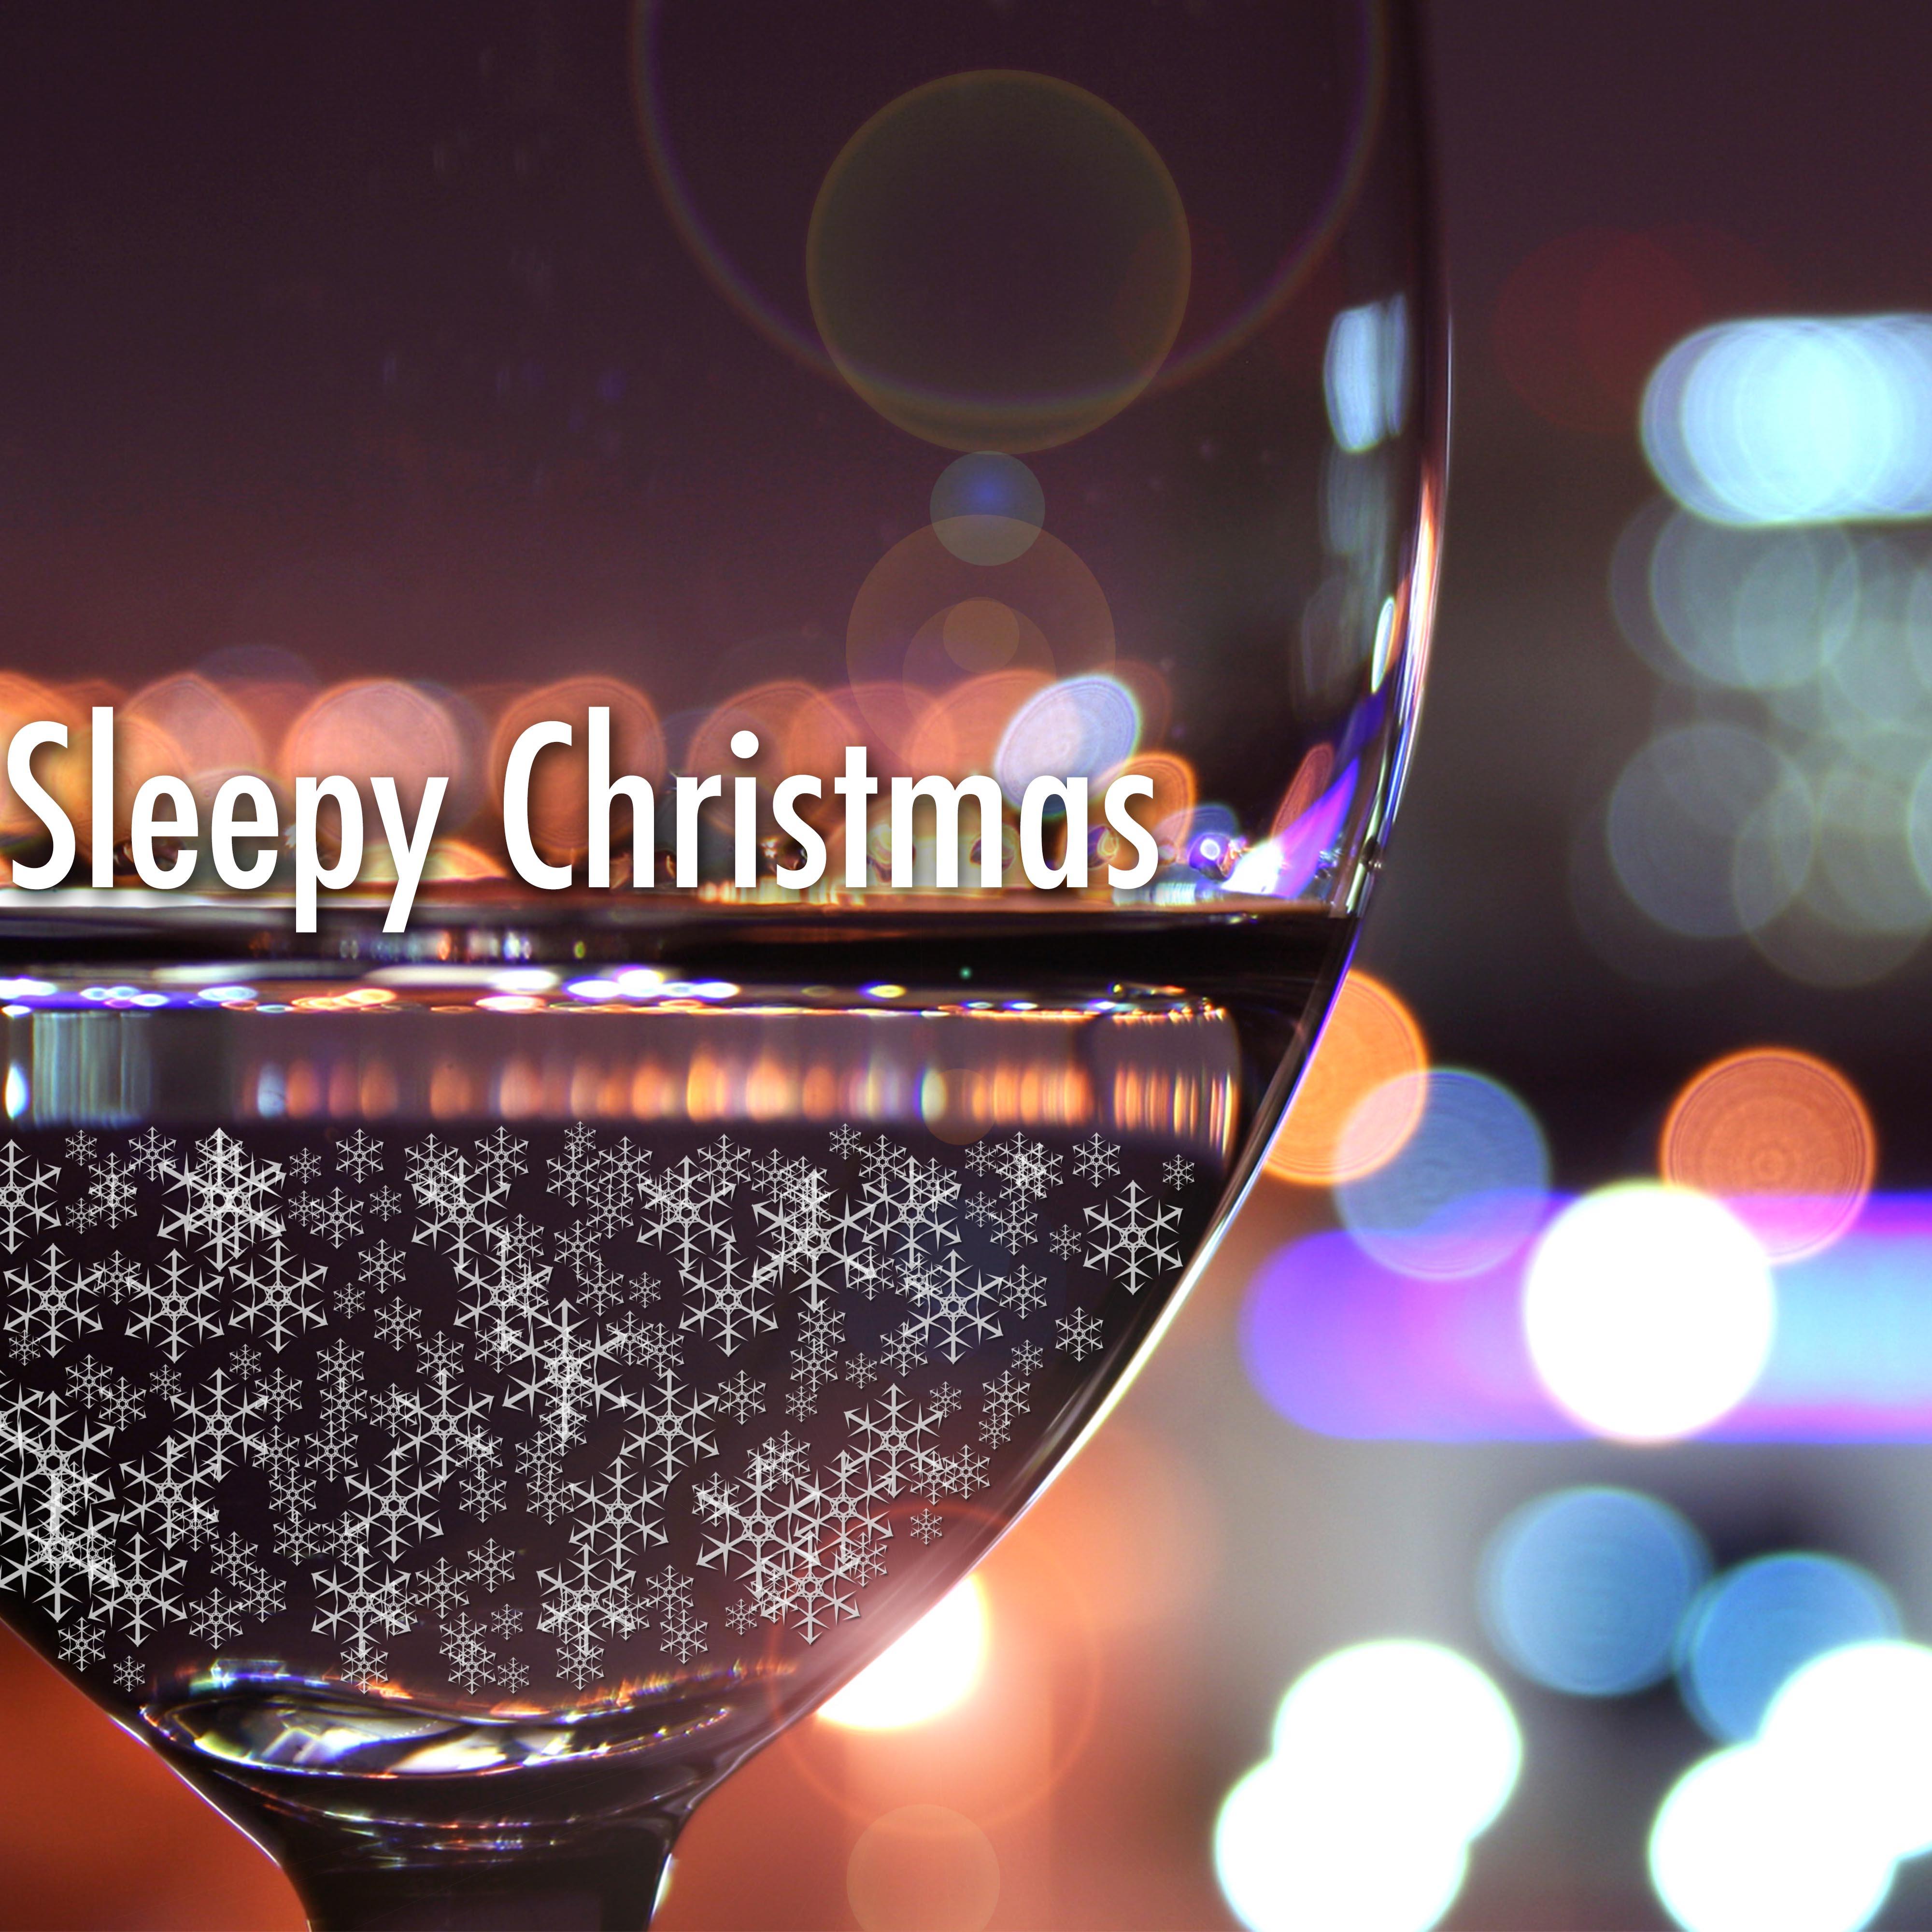 Sleepy Christmas - Traditional and Classical Christmas Music for Deep Sleep